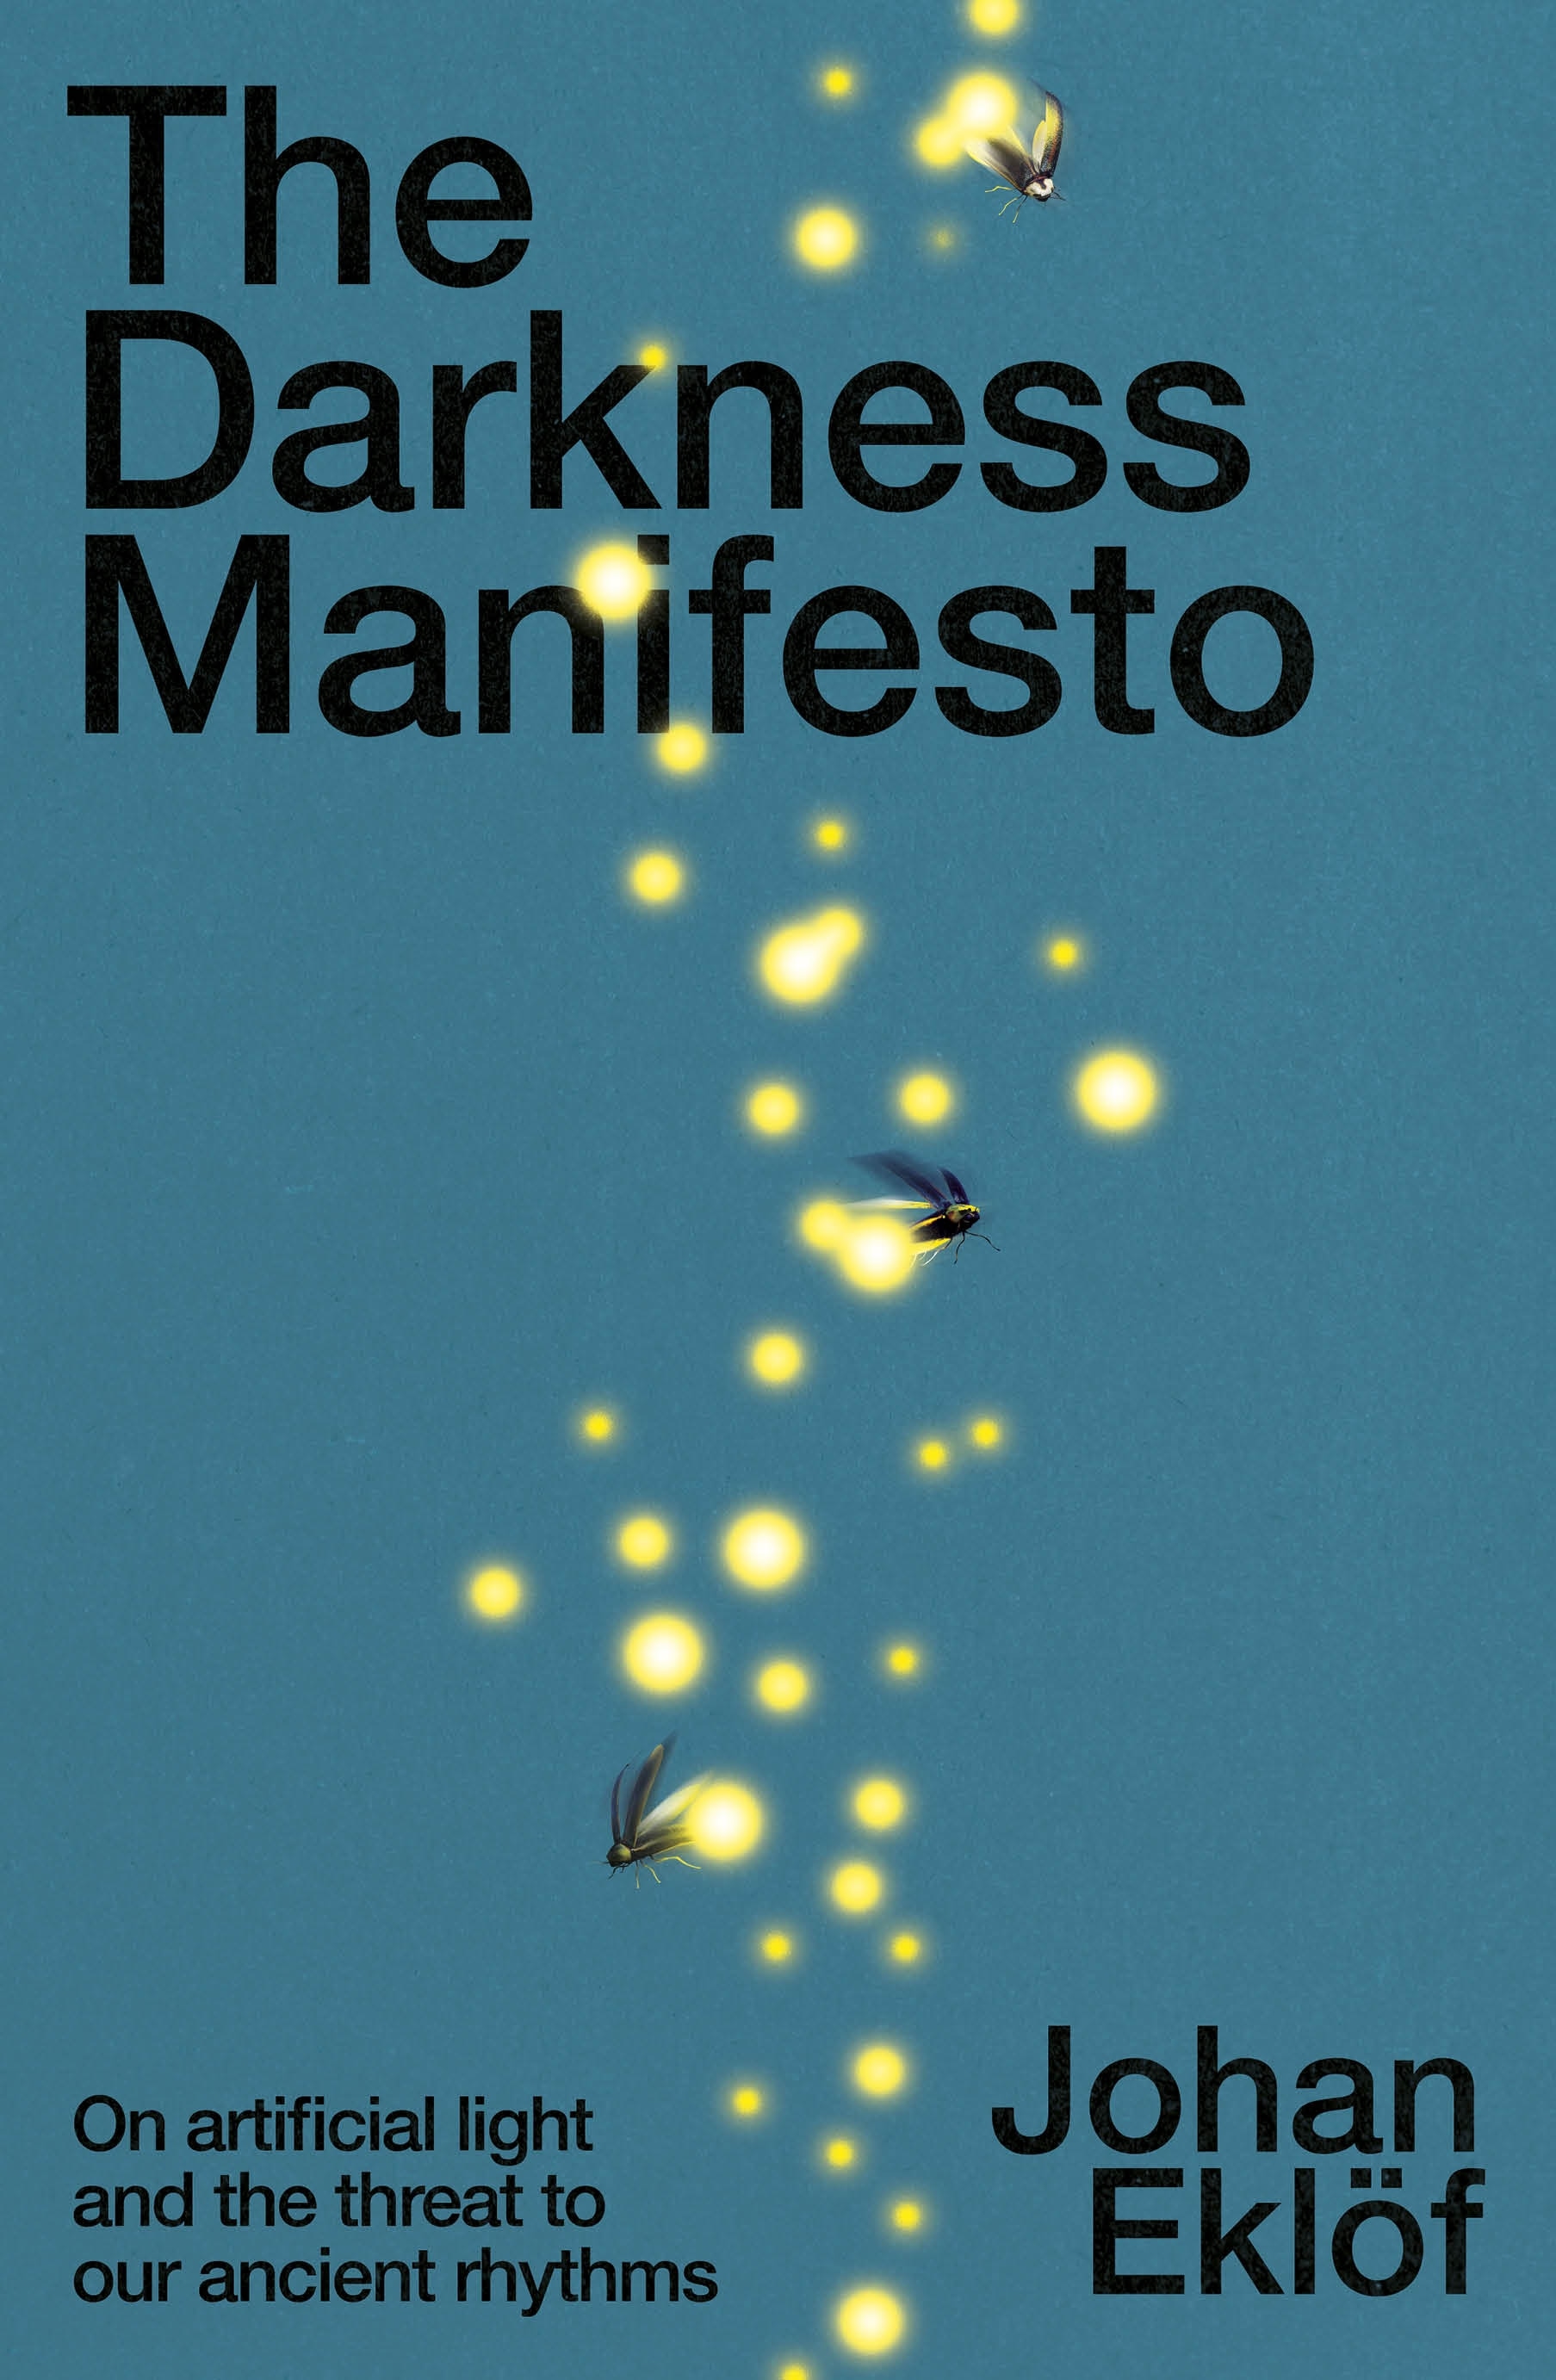 Book “The Darkness Manifesto” by Johan Eklöf — November 3, 2022